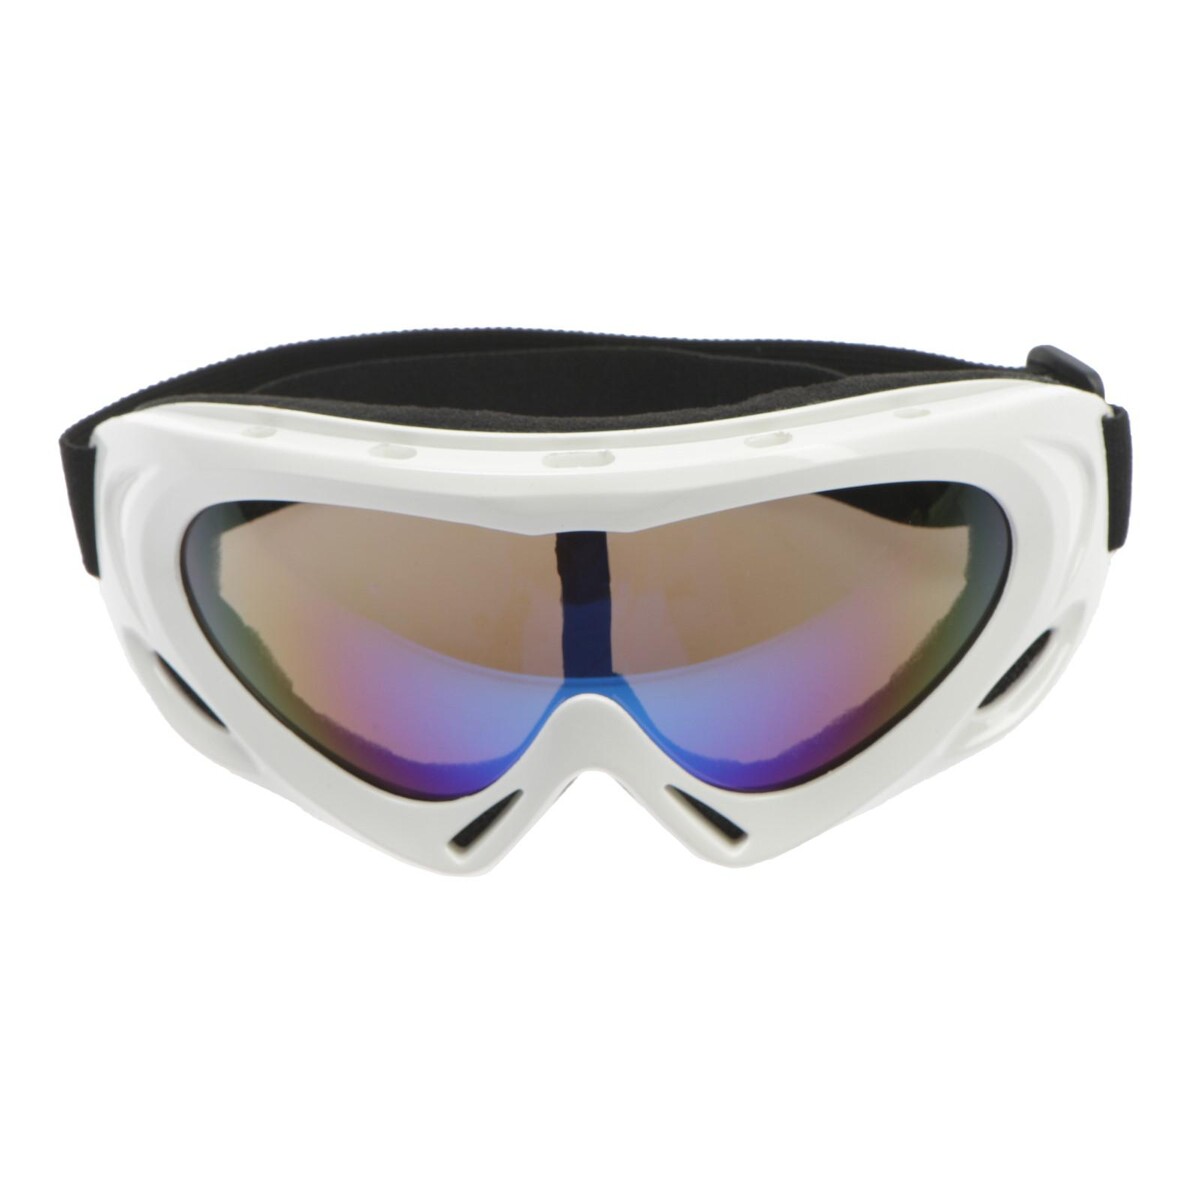 Очки для езды на мототехнике с доп. вентиляцией, стекло с затемнением, белые аксессуар очки с шипами белые